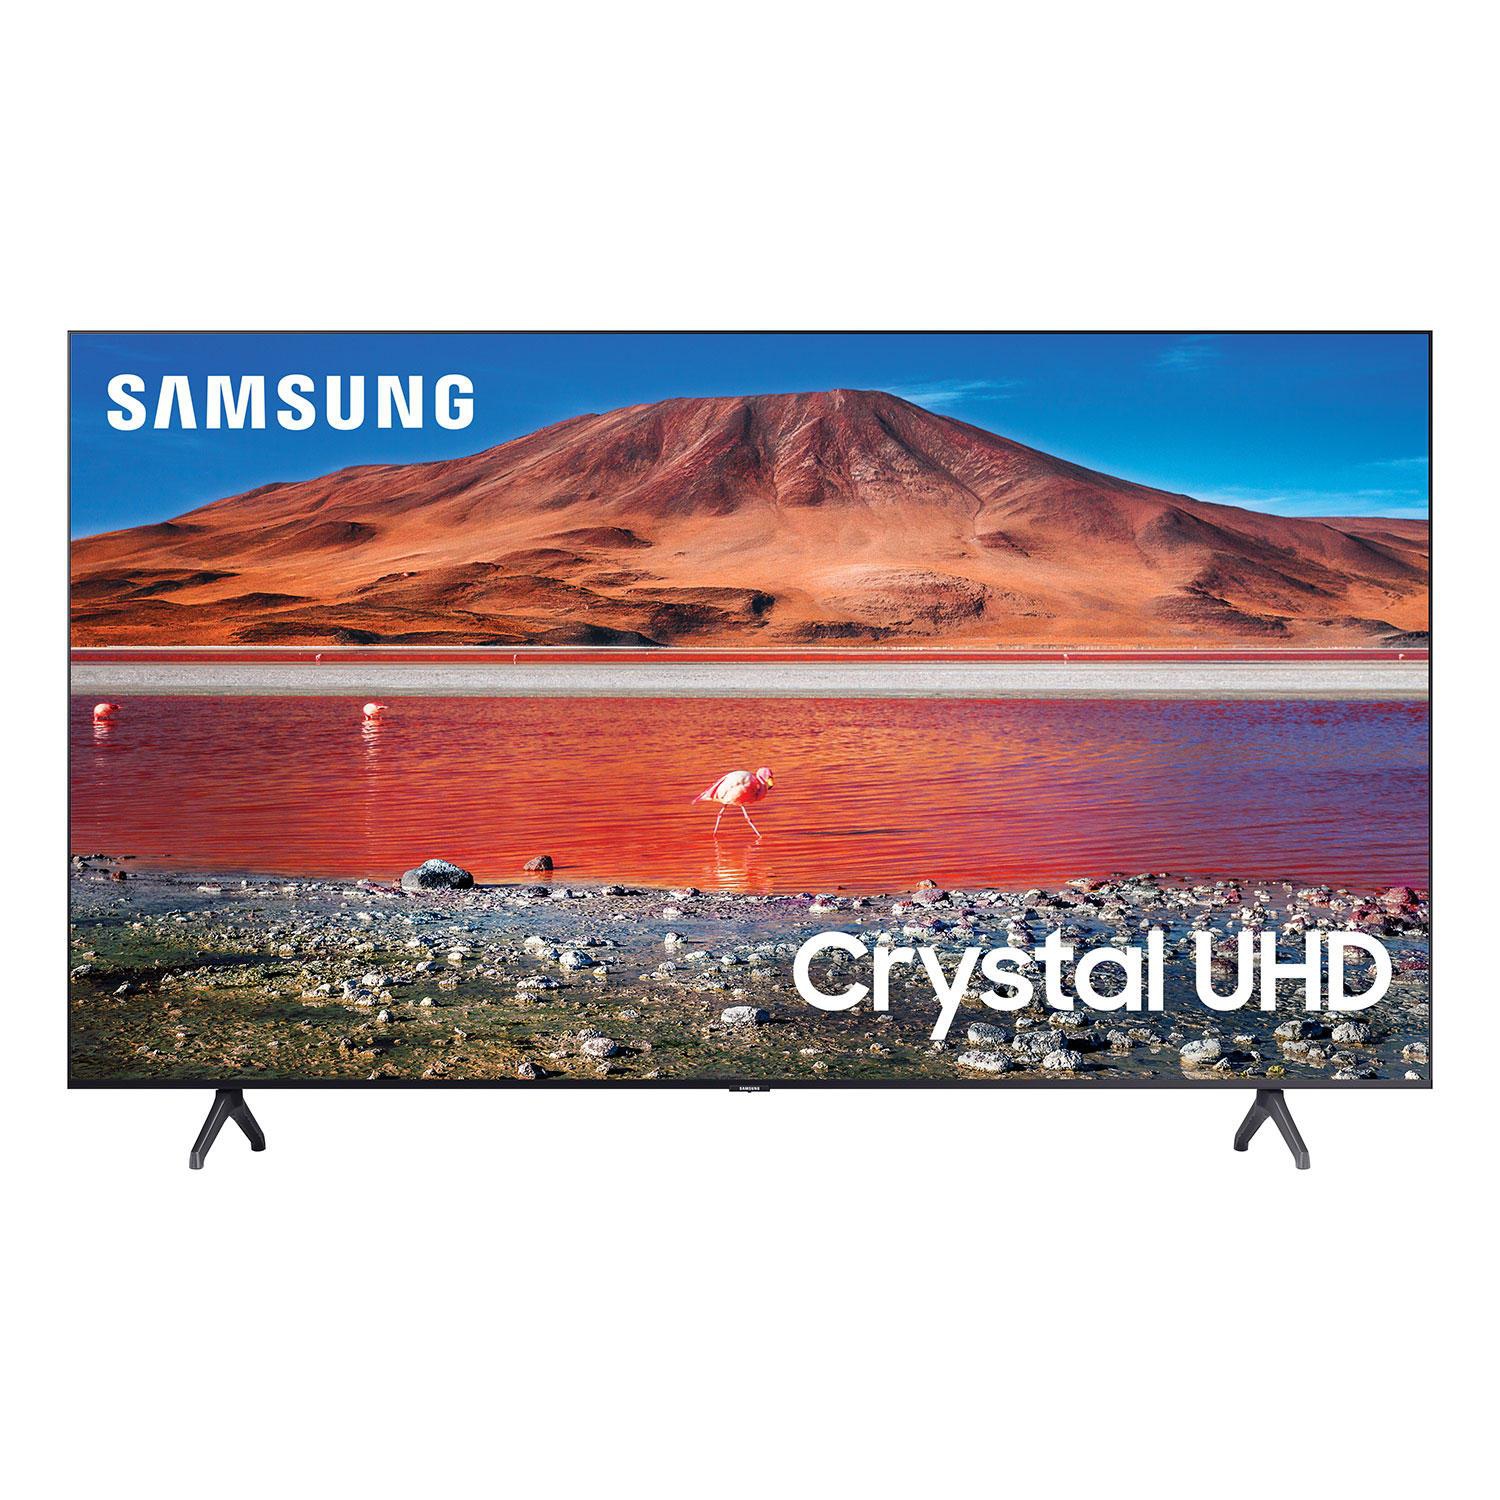 Refurbished (Good) - Samsung 50" Class TU7000 / TU700D -Series Crystal Ultra HD 4K Smart TV ( UN50TU7000 / UN50TU700D )